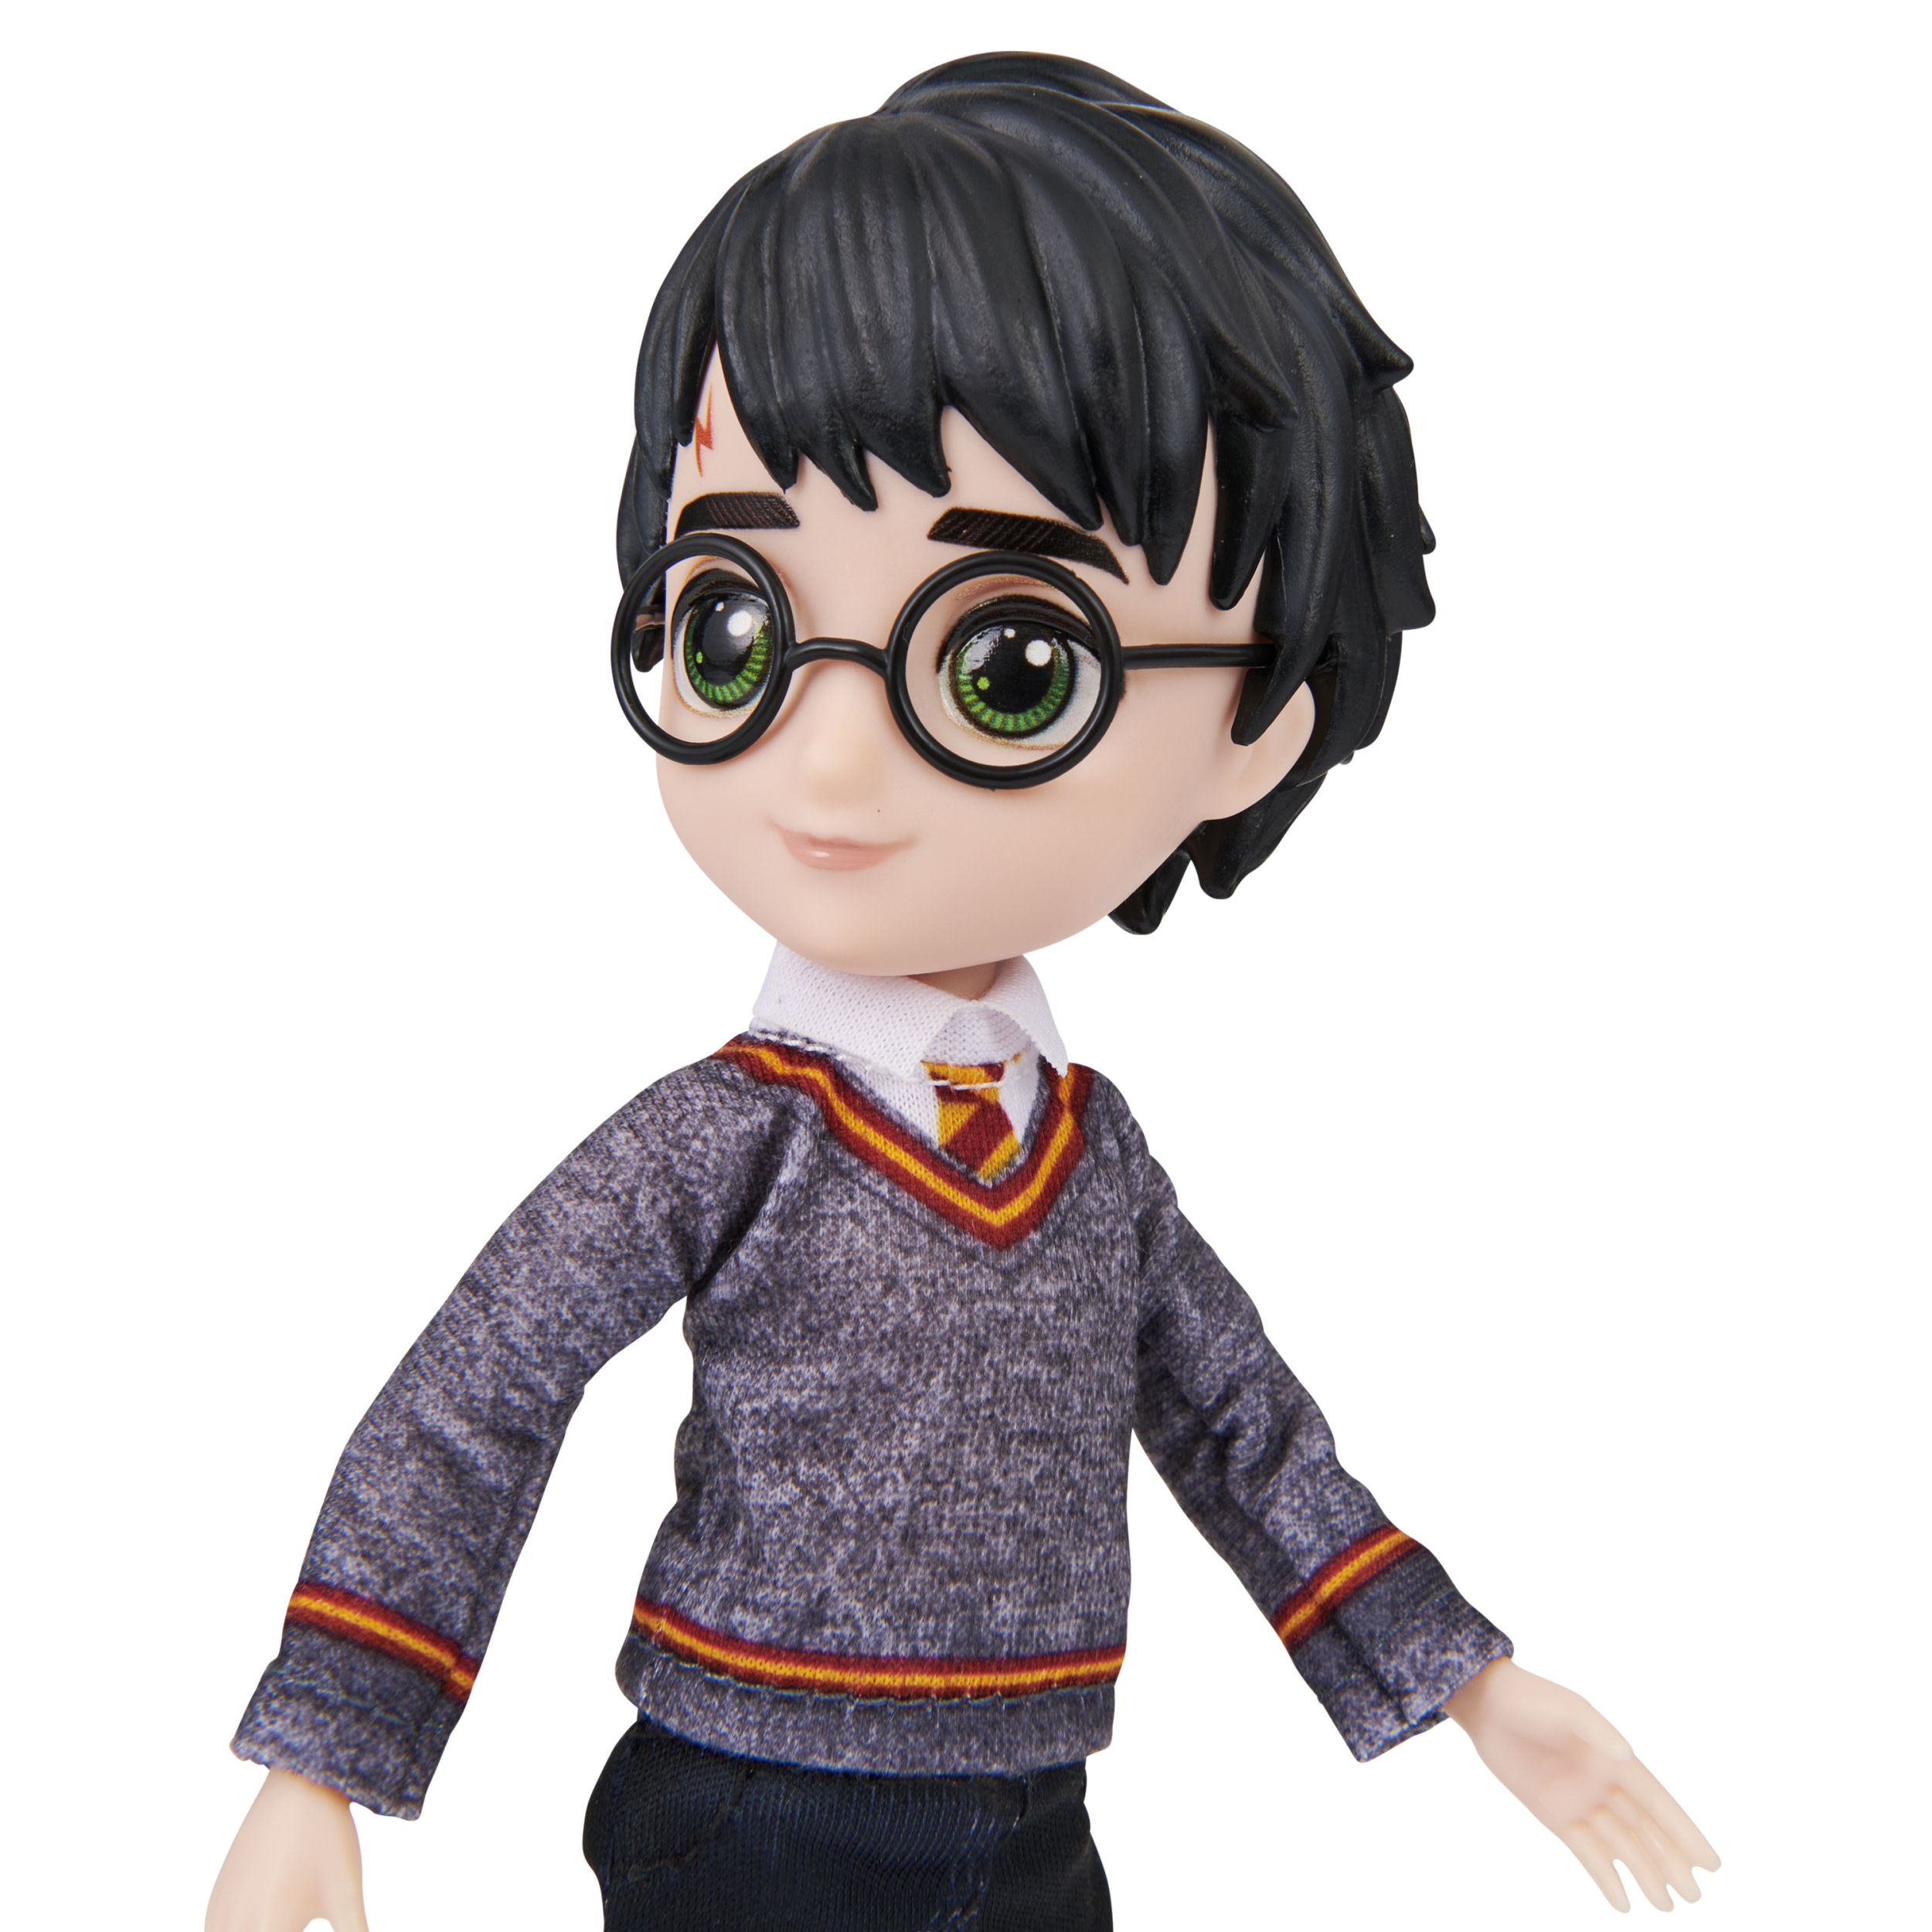 Harry potter - fashion doll harry potter 20cm - Harry Potter